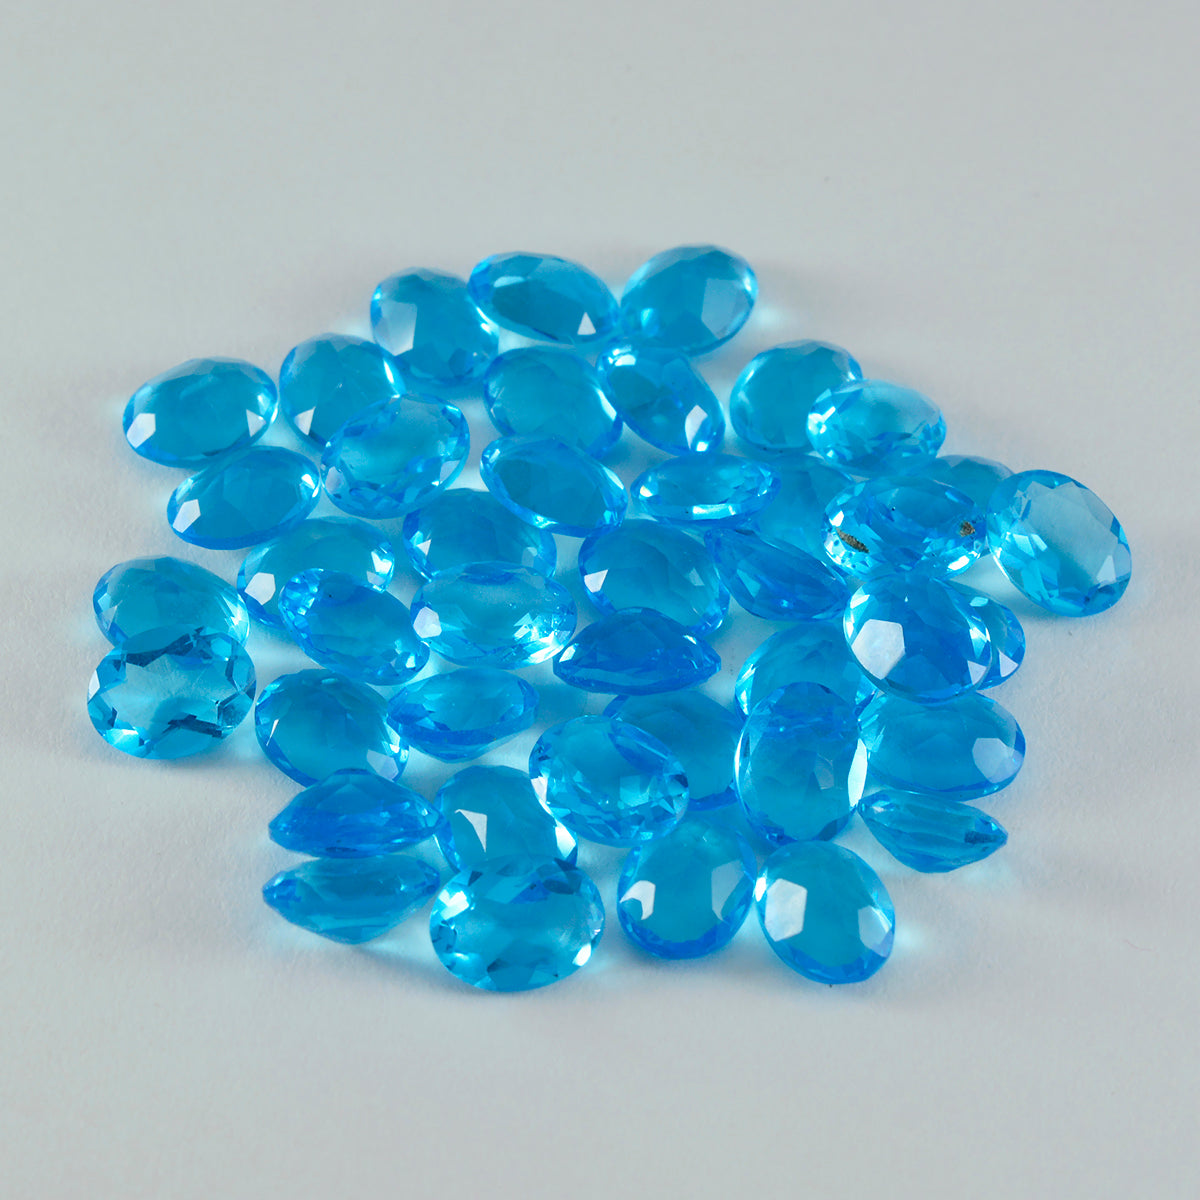 Riyogems 1 pieza de topacio azul CZ facetado 6x8 mm forma ovalada piedra de buena calidad